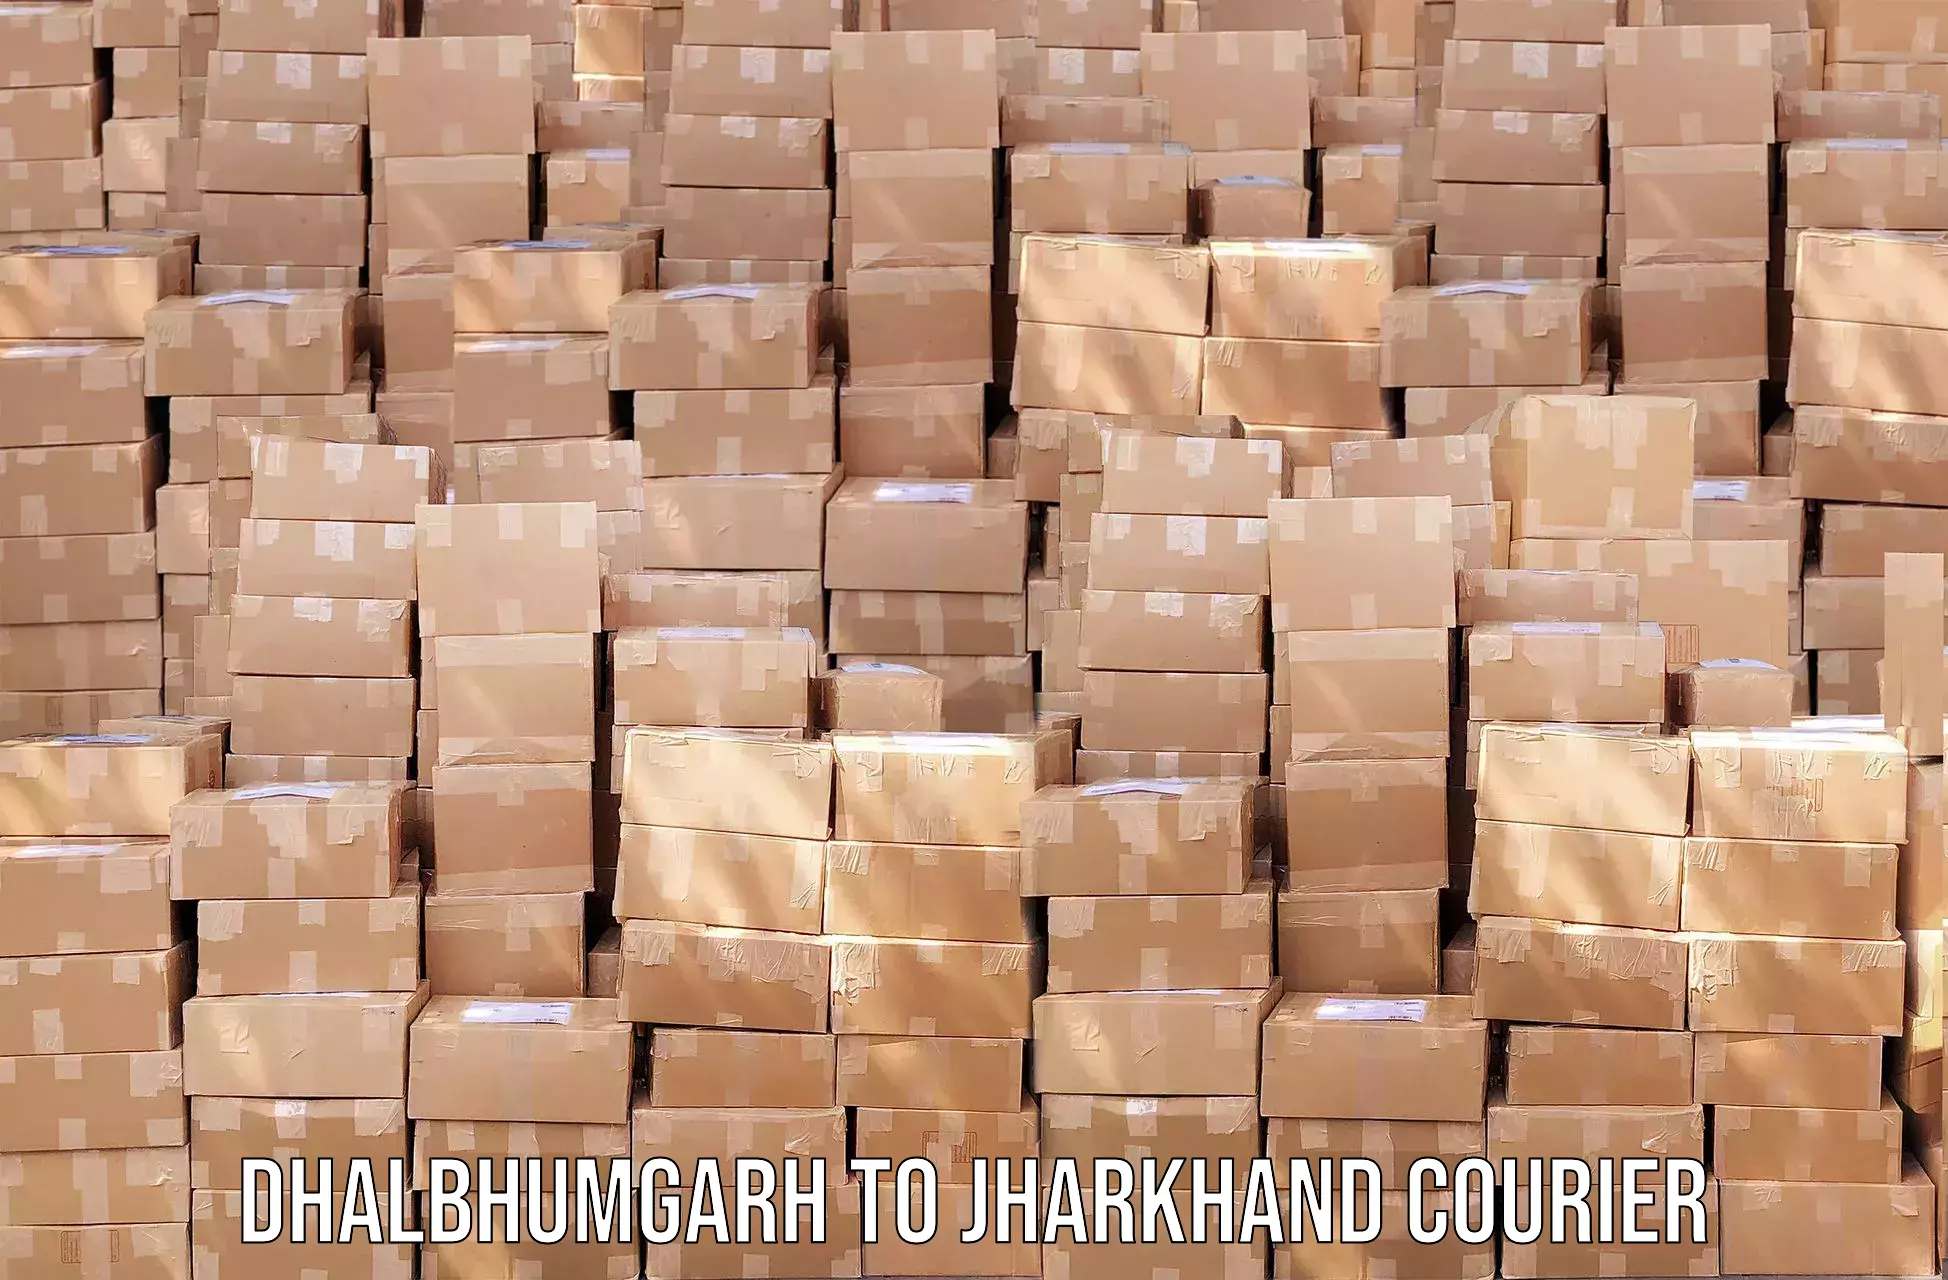 High value parcel delivery Dhalbhumgarh to Govindpur